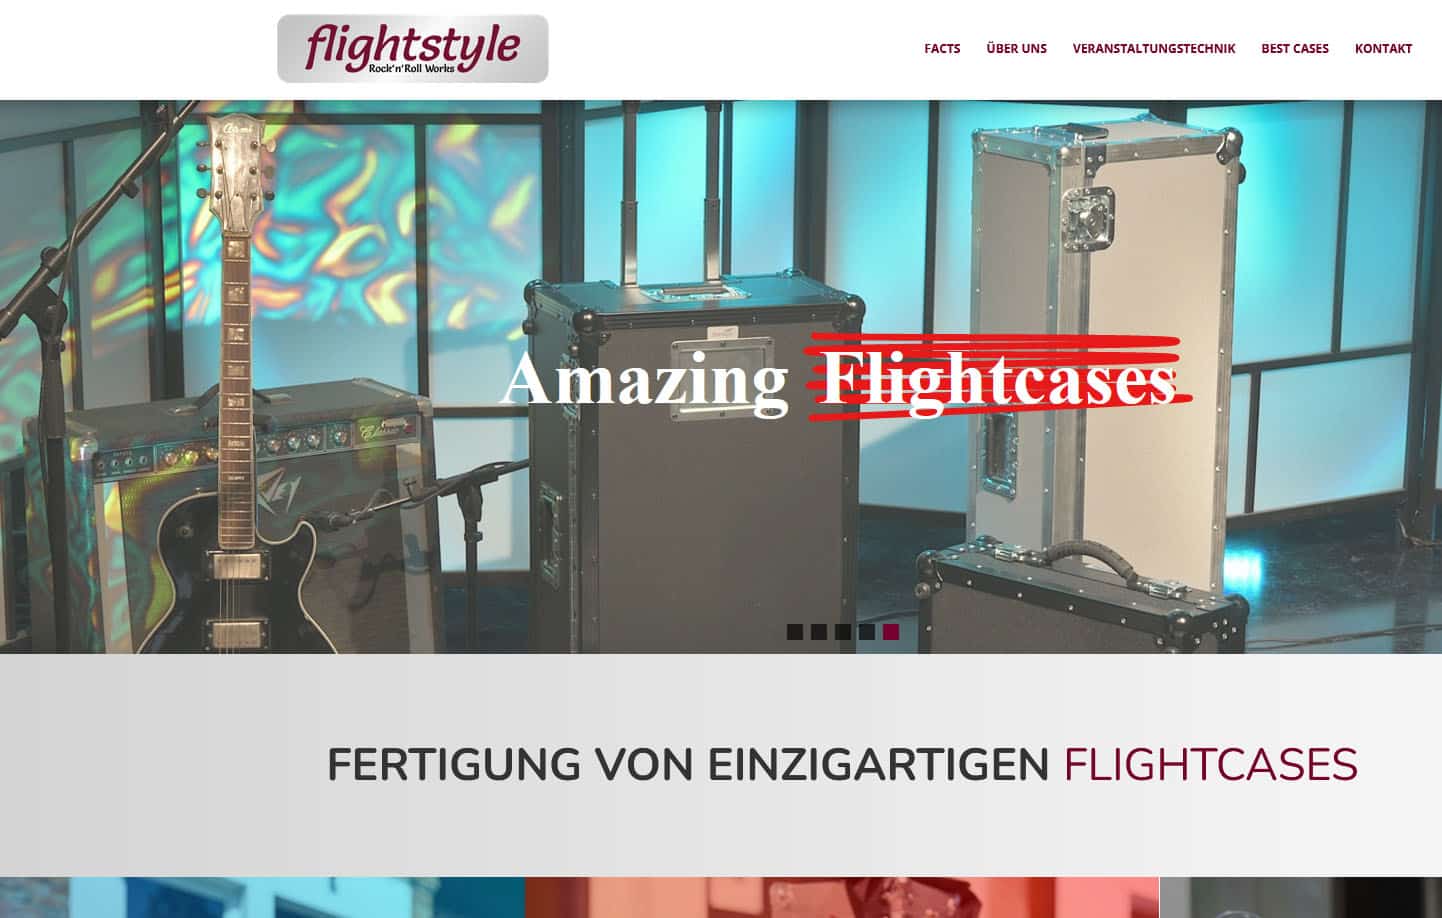 Website Referenzen Graz: Flightstyle: Amazing Flightcases